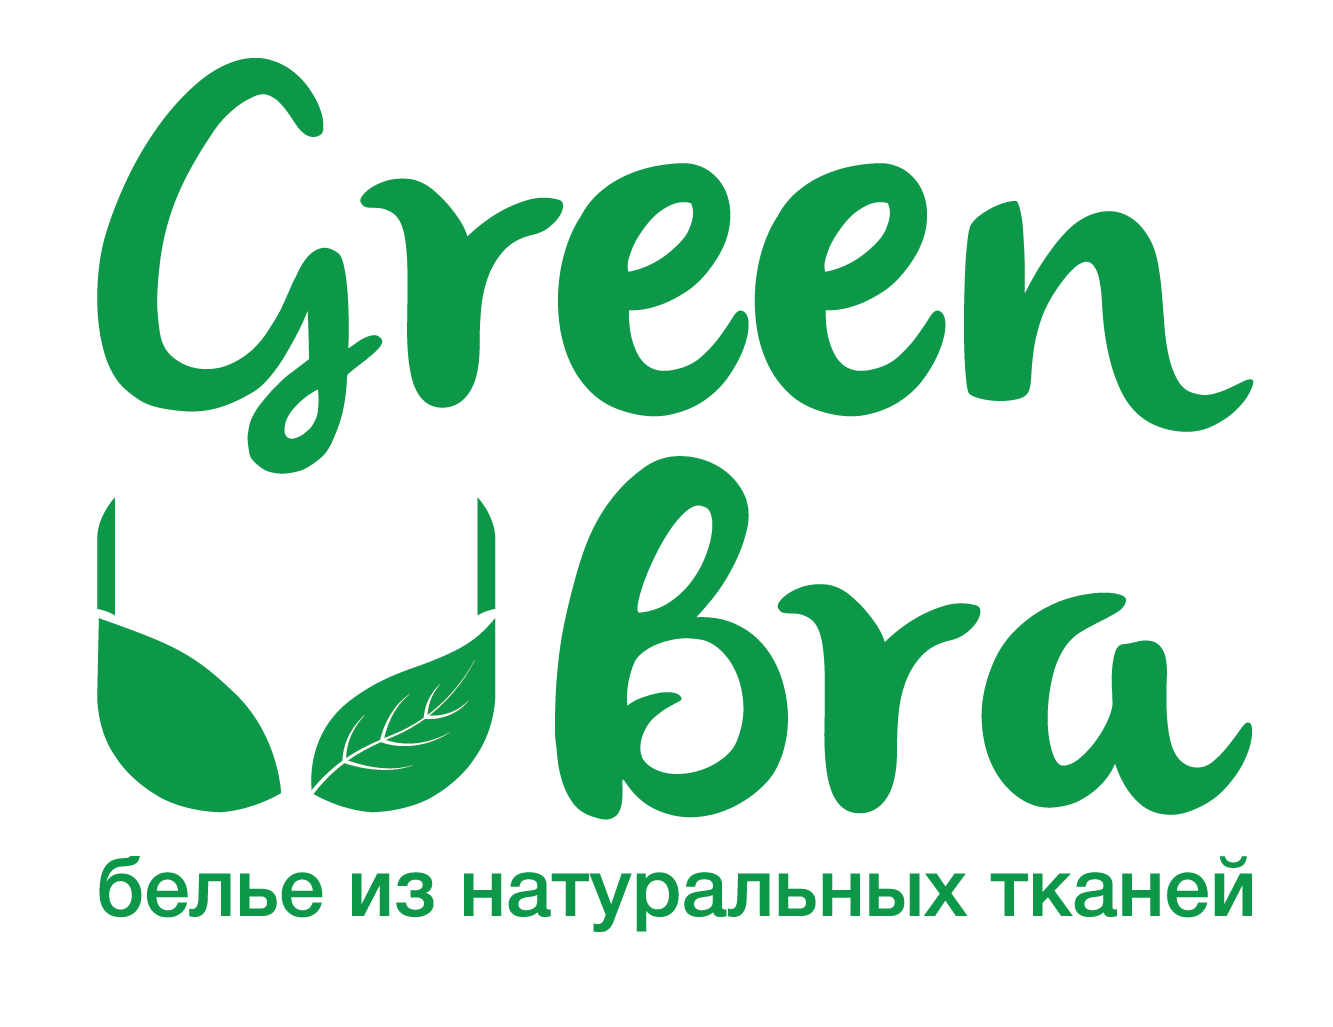 GreenBra — белье из натуральных тканей